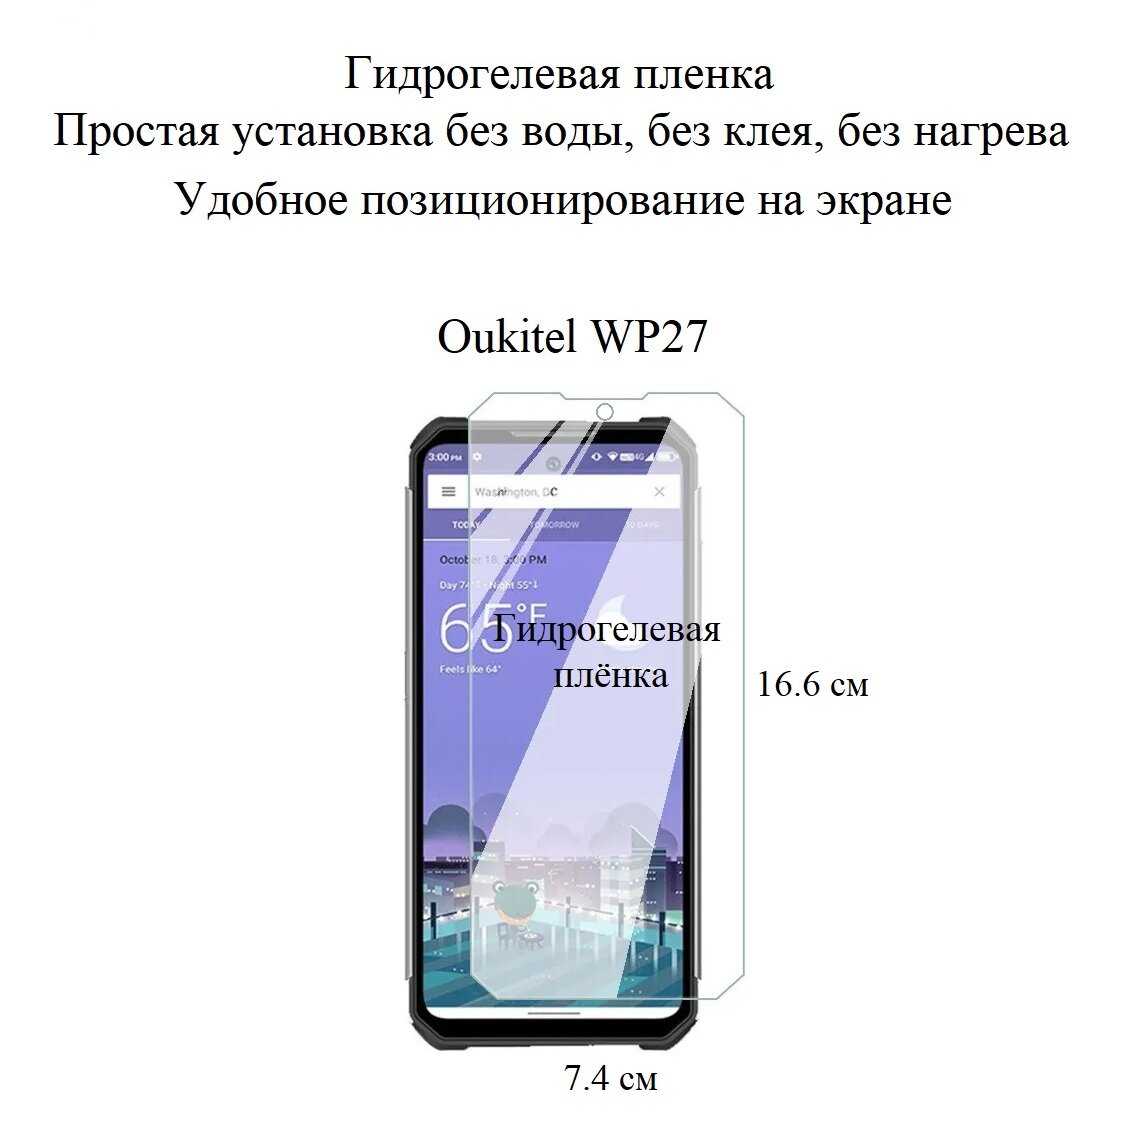 Глянцевая гидрогелевая пленка hoco. на экран смартфона Oukitel WP27